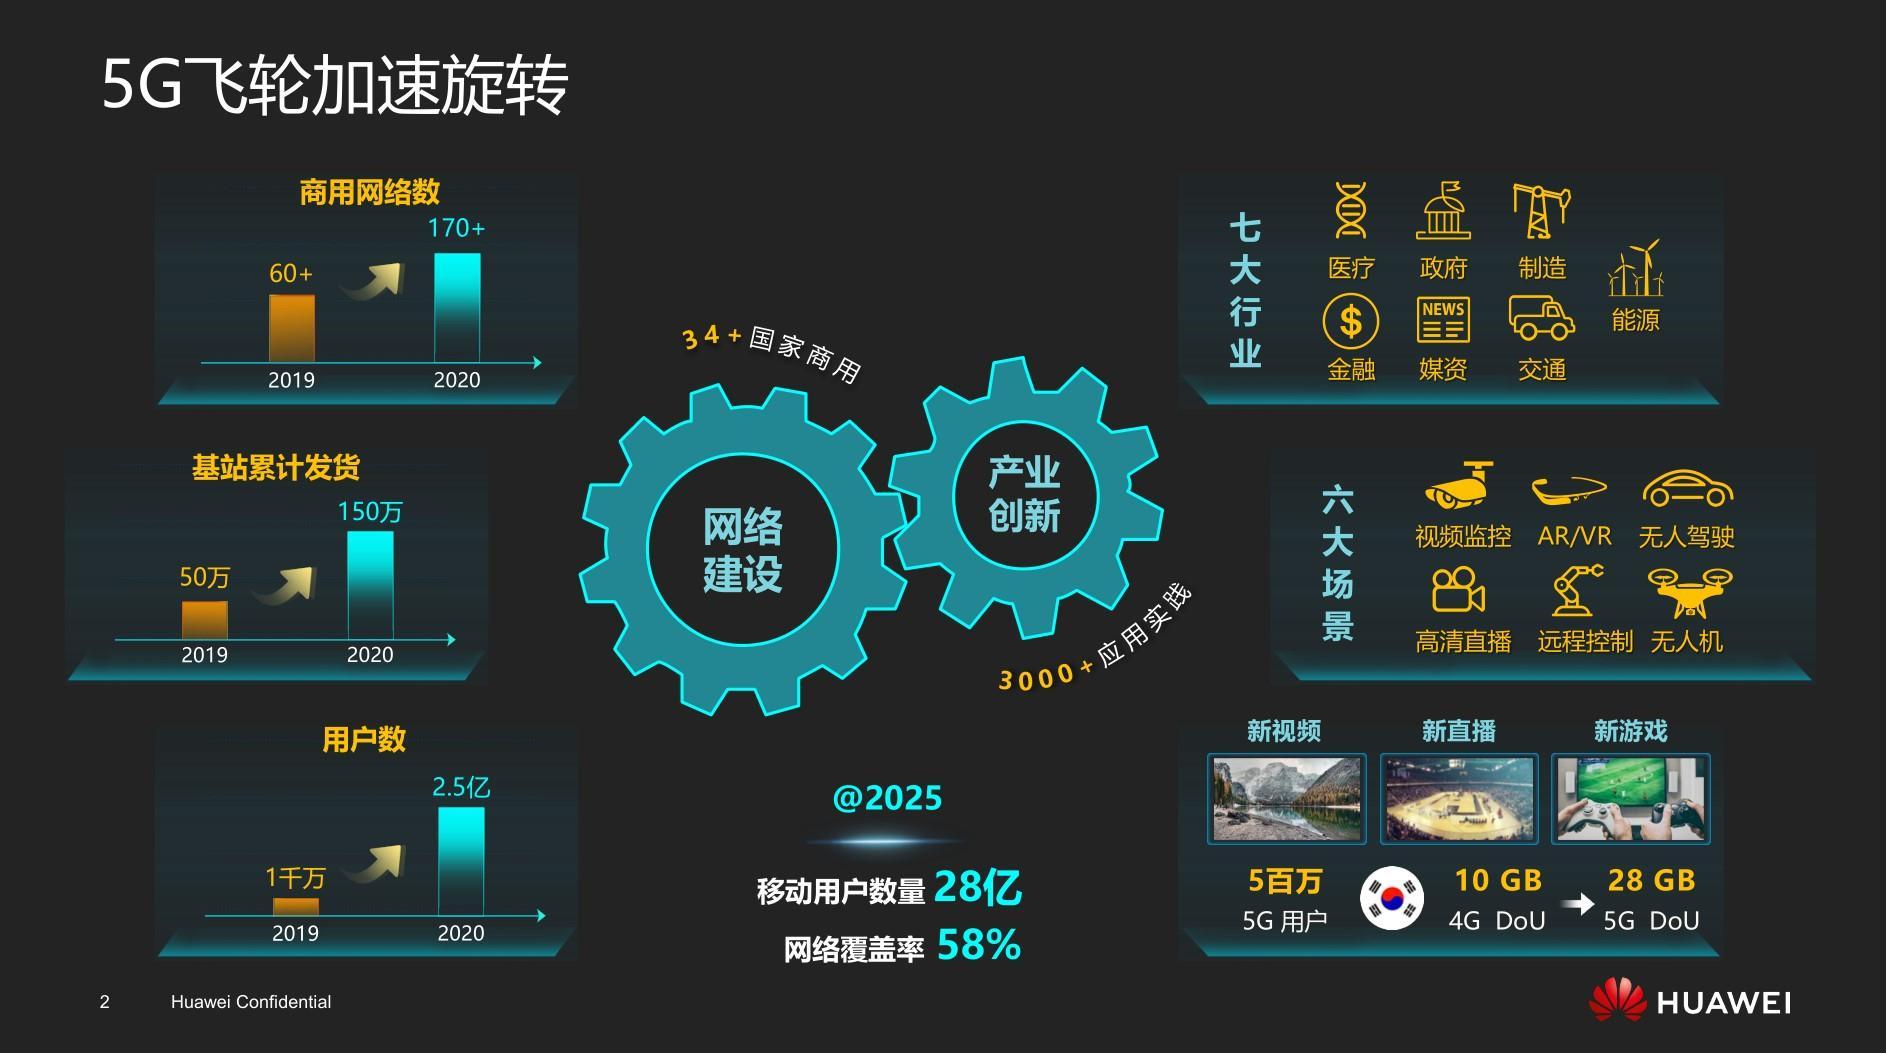 安徽省 5G 智能手机市场竞争激烈，各品牌角逐，技术变革影响生活方式  第2张